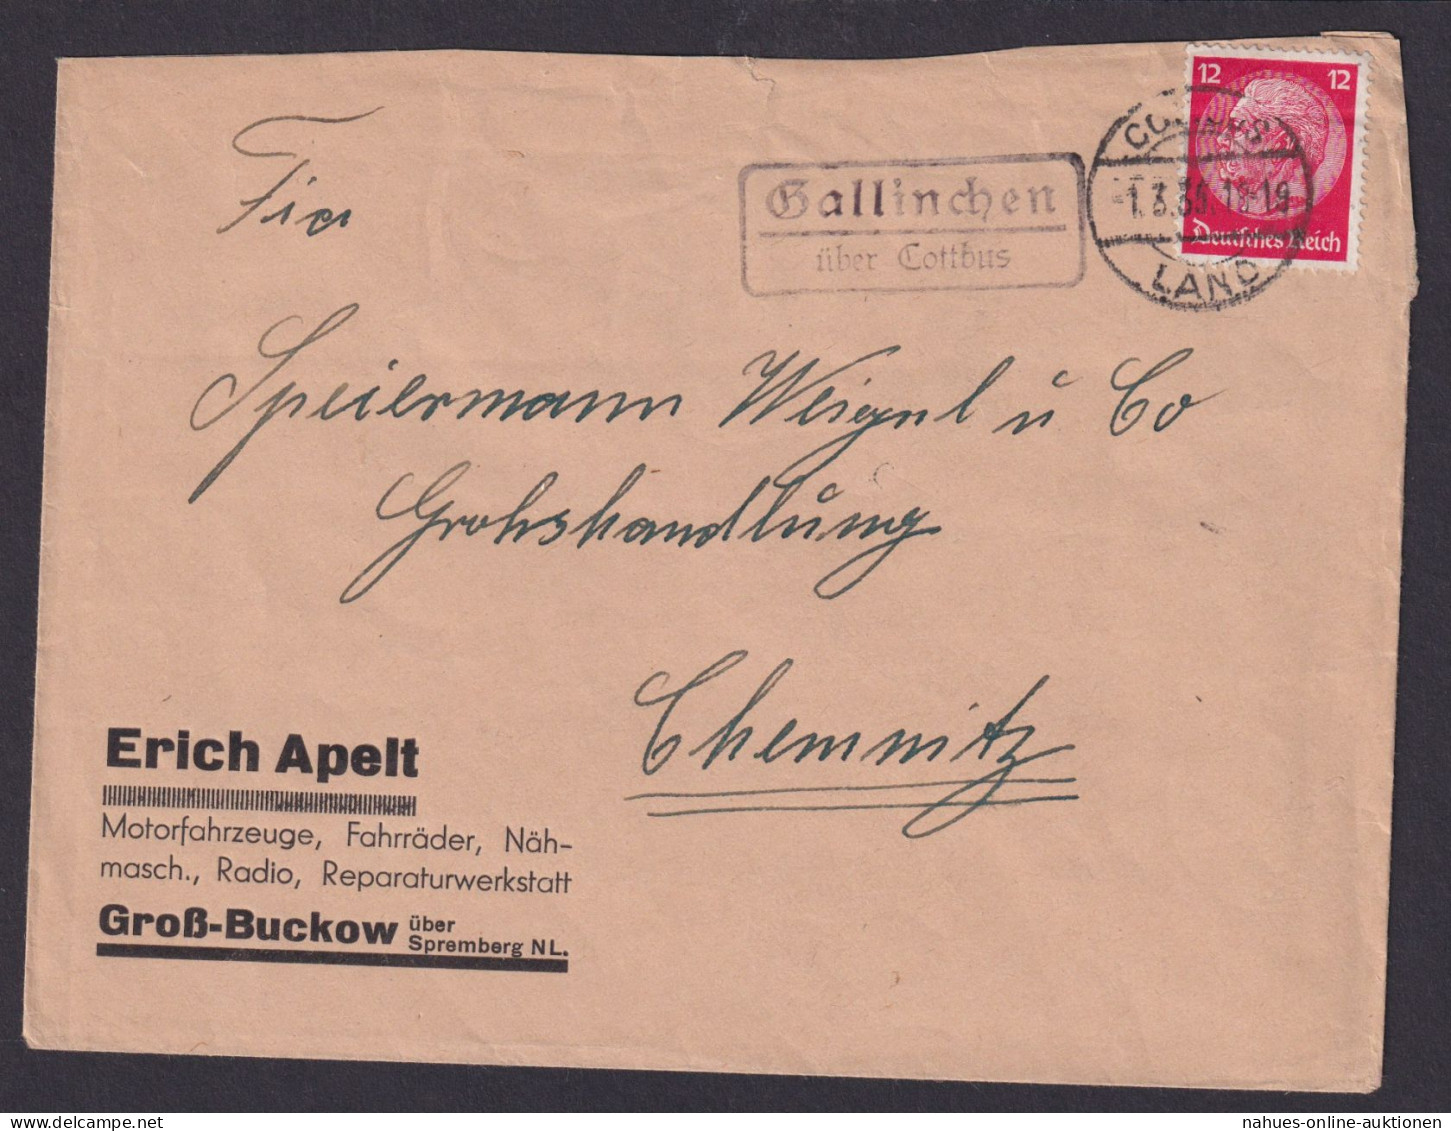 Gallinchen über Cottbus Brandenburg Deutsches Reich Brief Landpoststempel - Cartas & Documentos